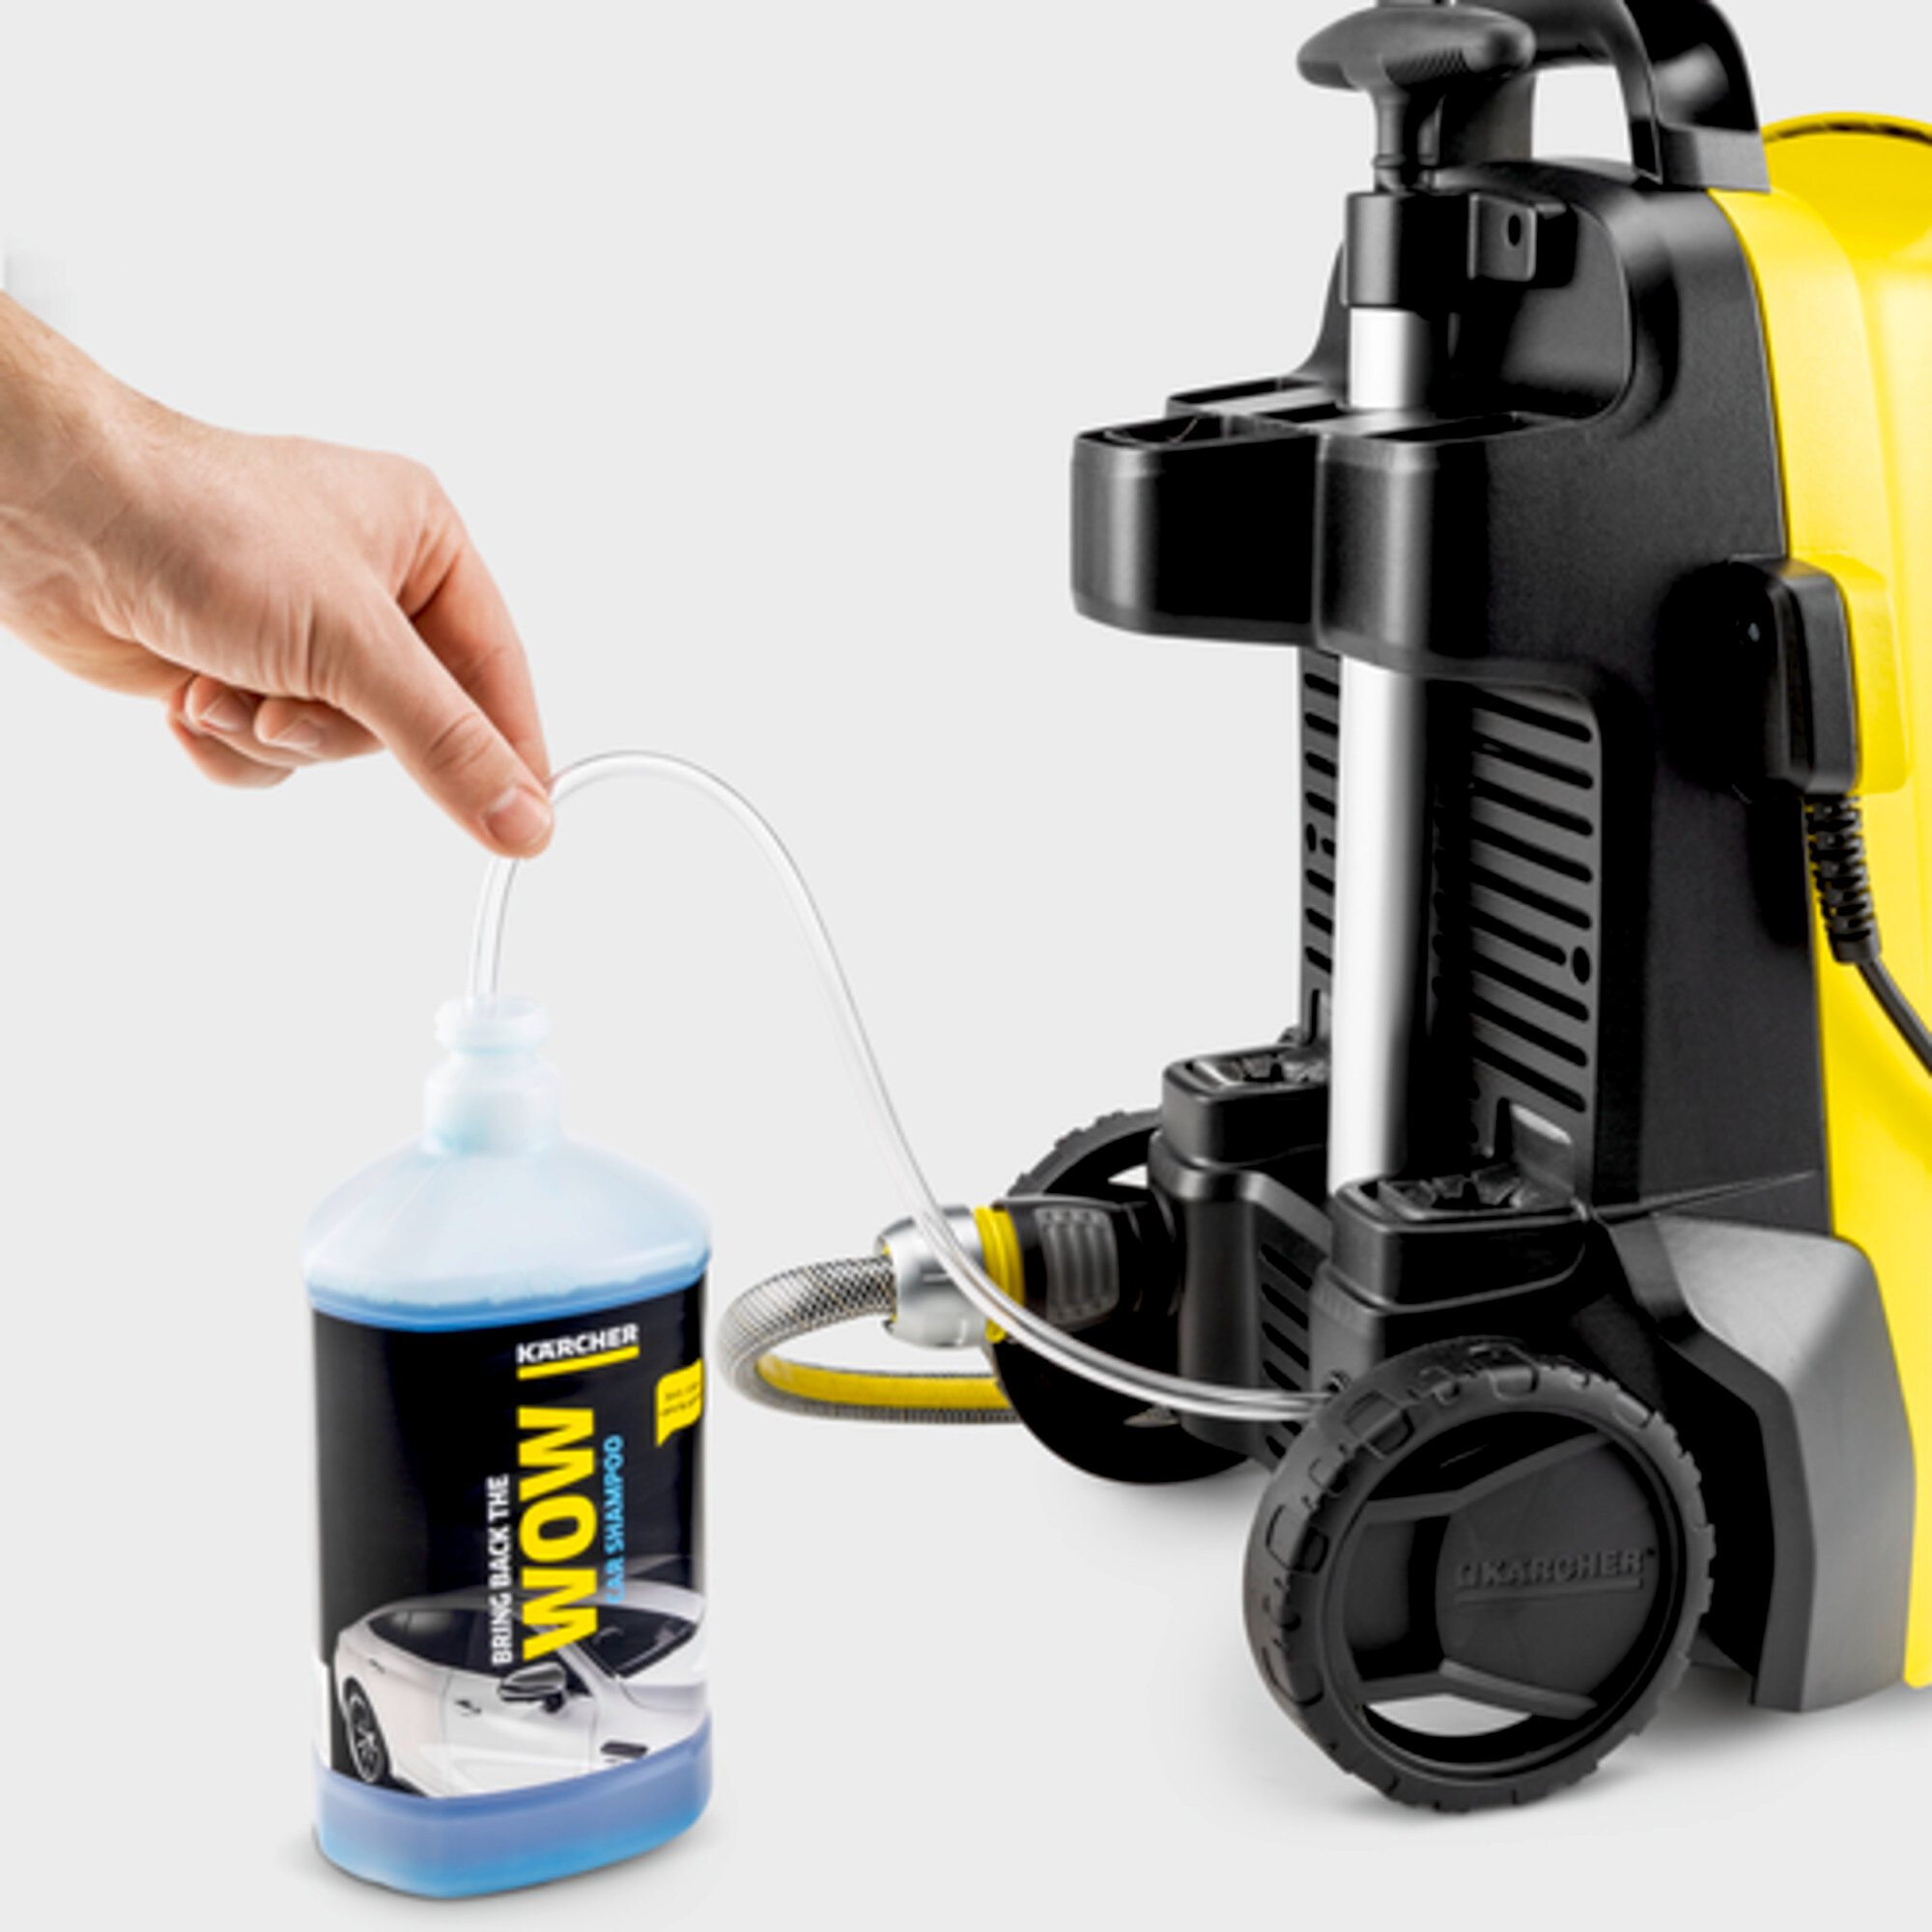 Myjka ciśnieniowa K 4 Compact UM Limited Edition: Możliwość zasysania środków czyszczących.